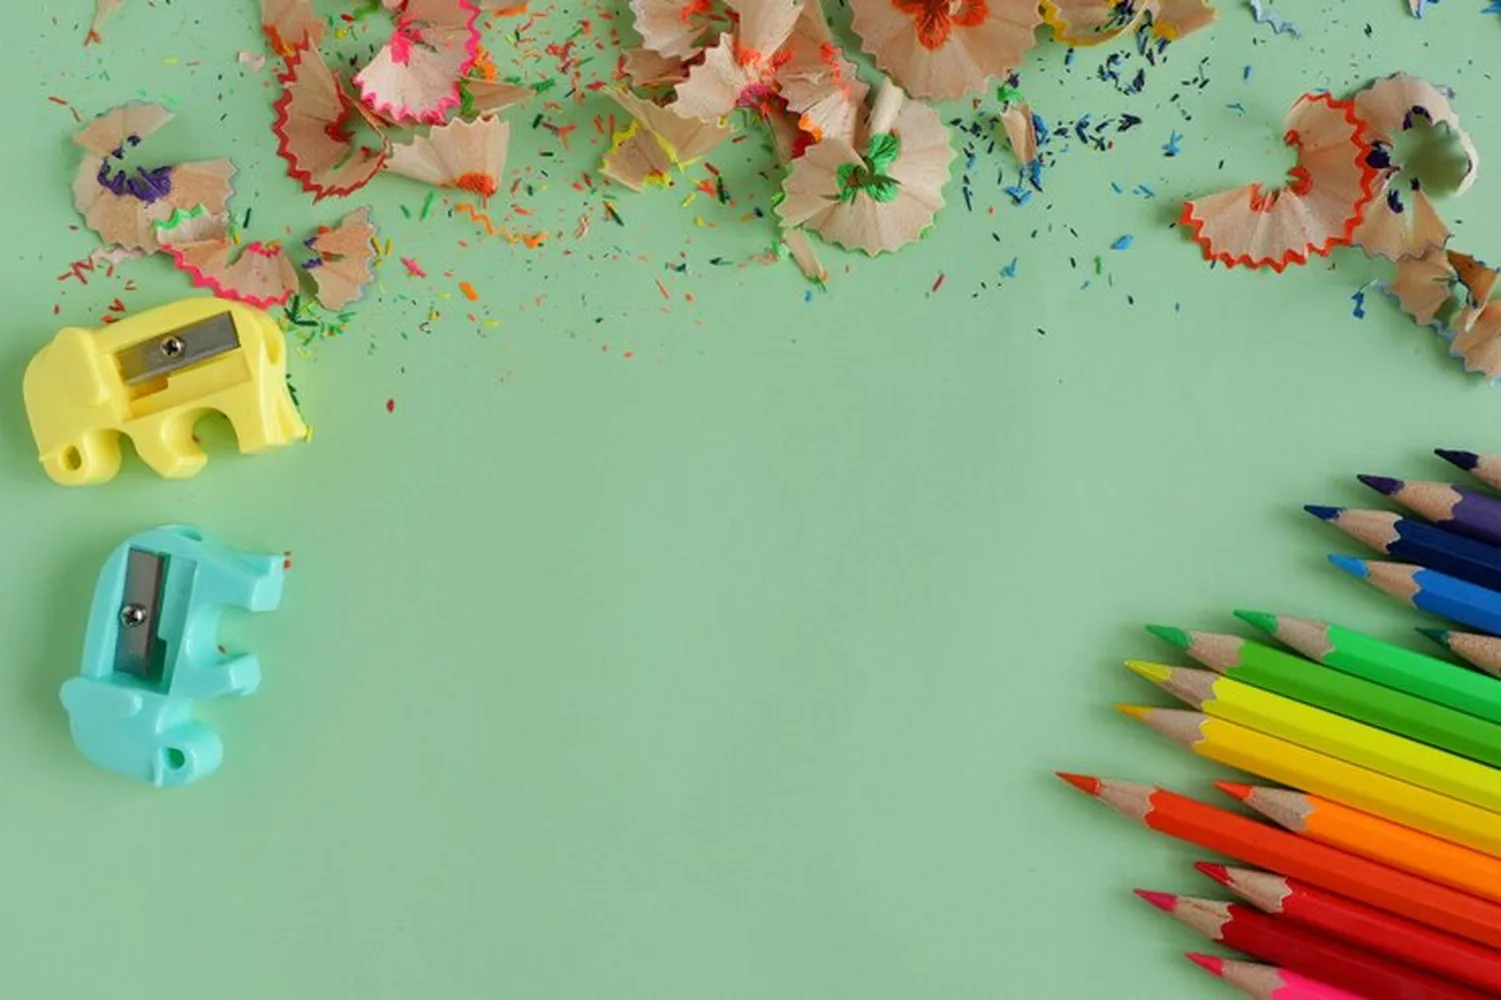 پوستر سه بعدی مدرسه طرح تراشه های مداد رنگی